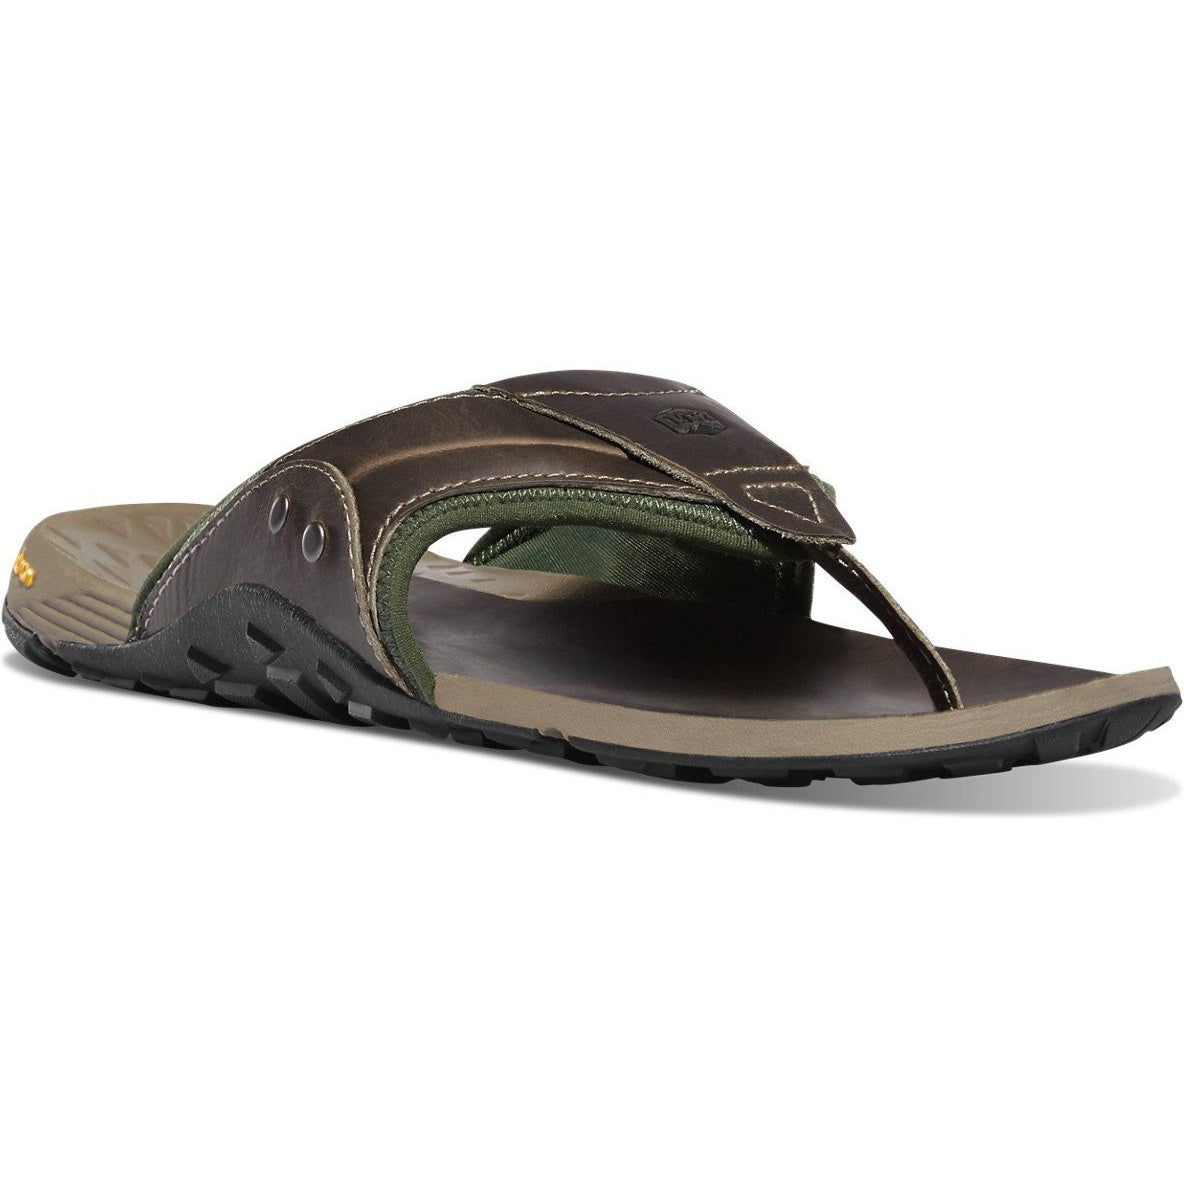 Danner Men's Lost Coast Sandal - Gray - 68134 8 / Medium / Brown - Overlook Boots